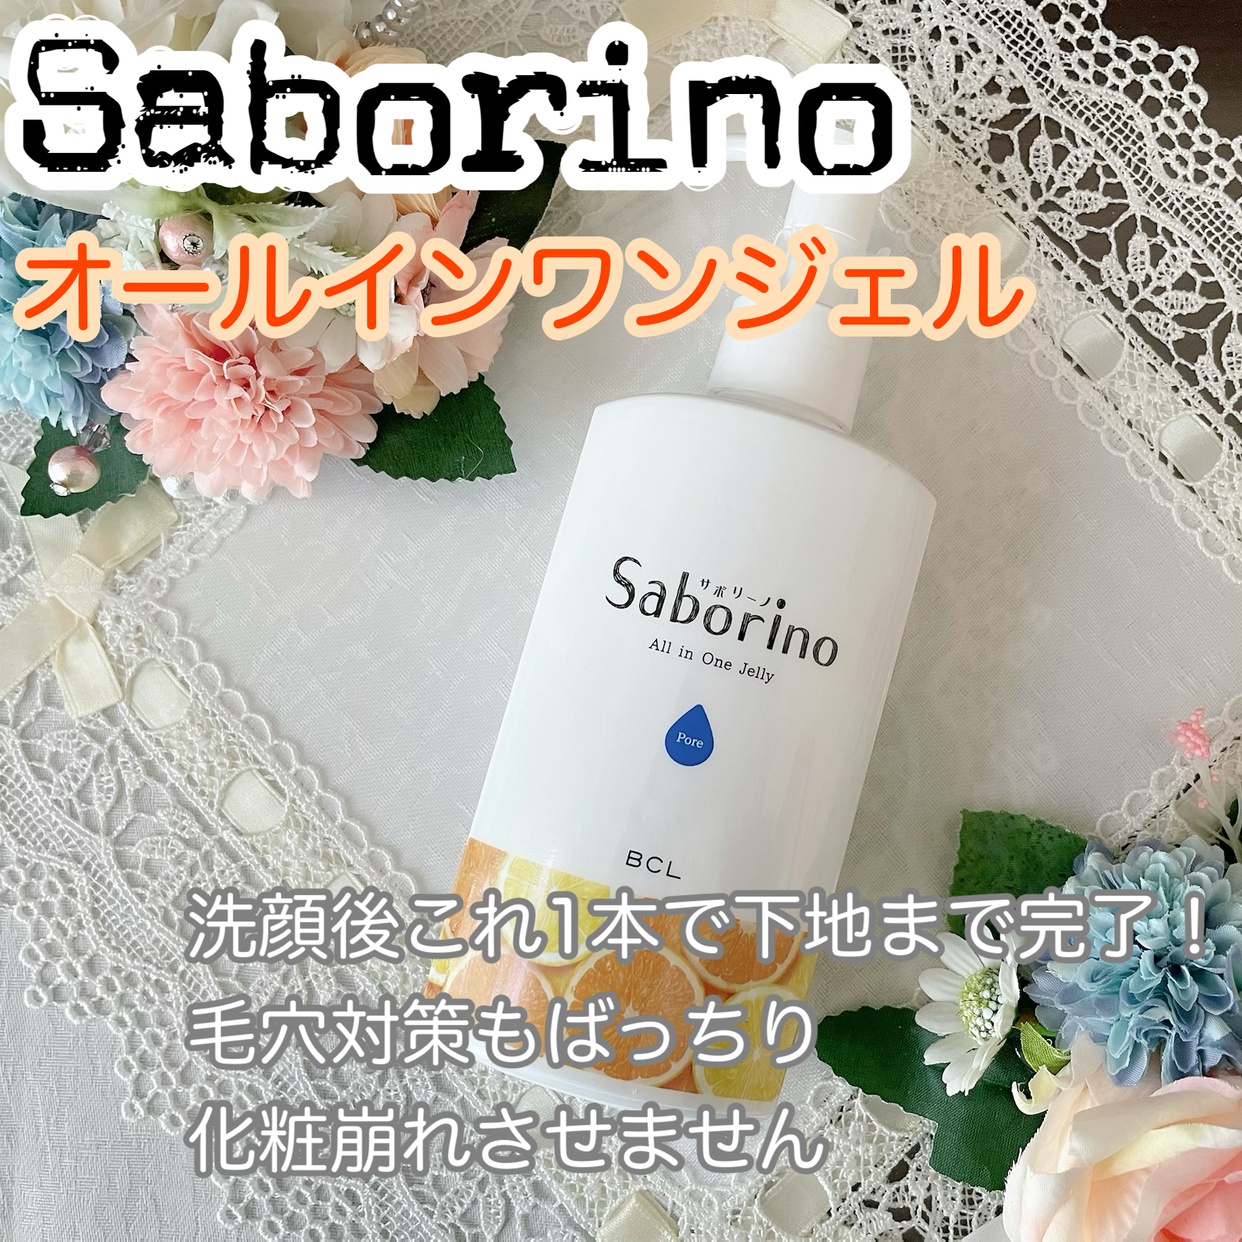 Saborino(サボリーノ) おはようるおいジュレ FOの良い点・メリットに関するかおきちさんの口コミ画像1